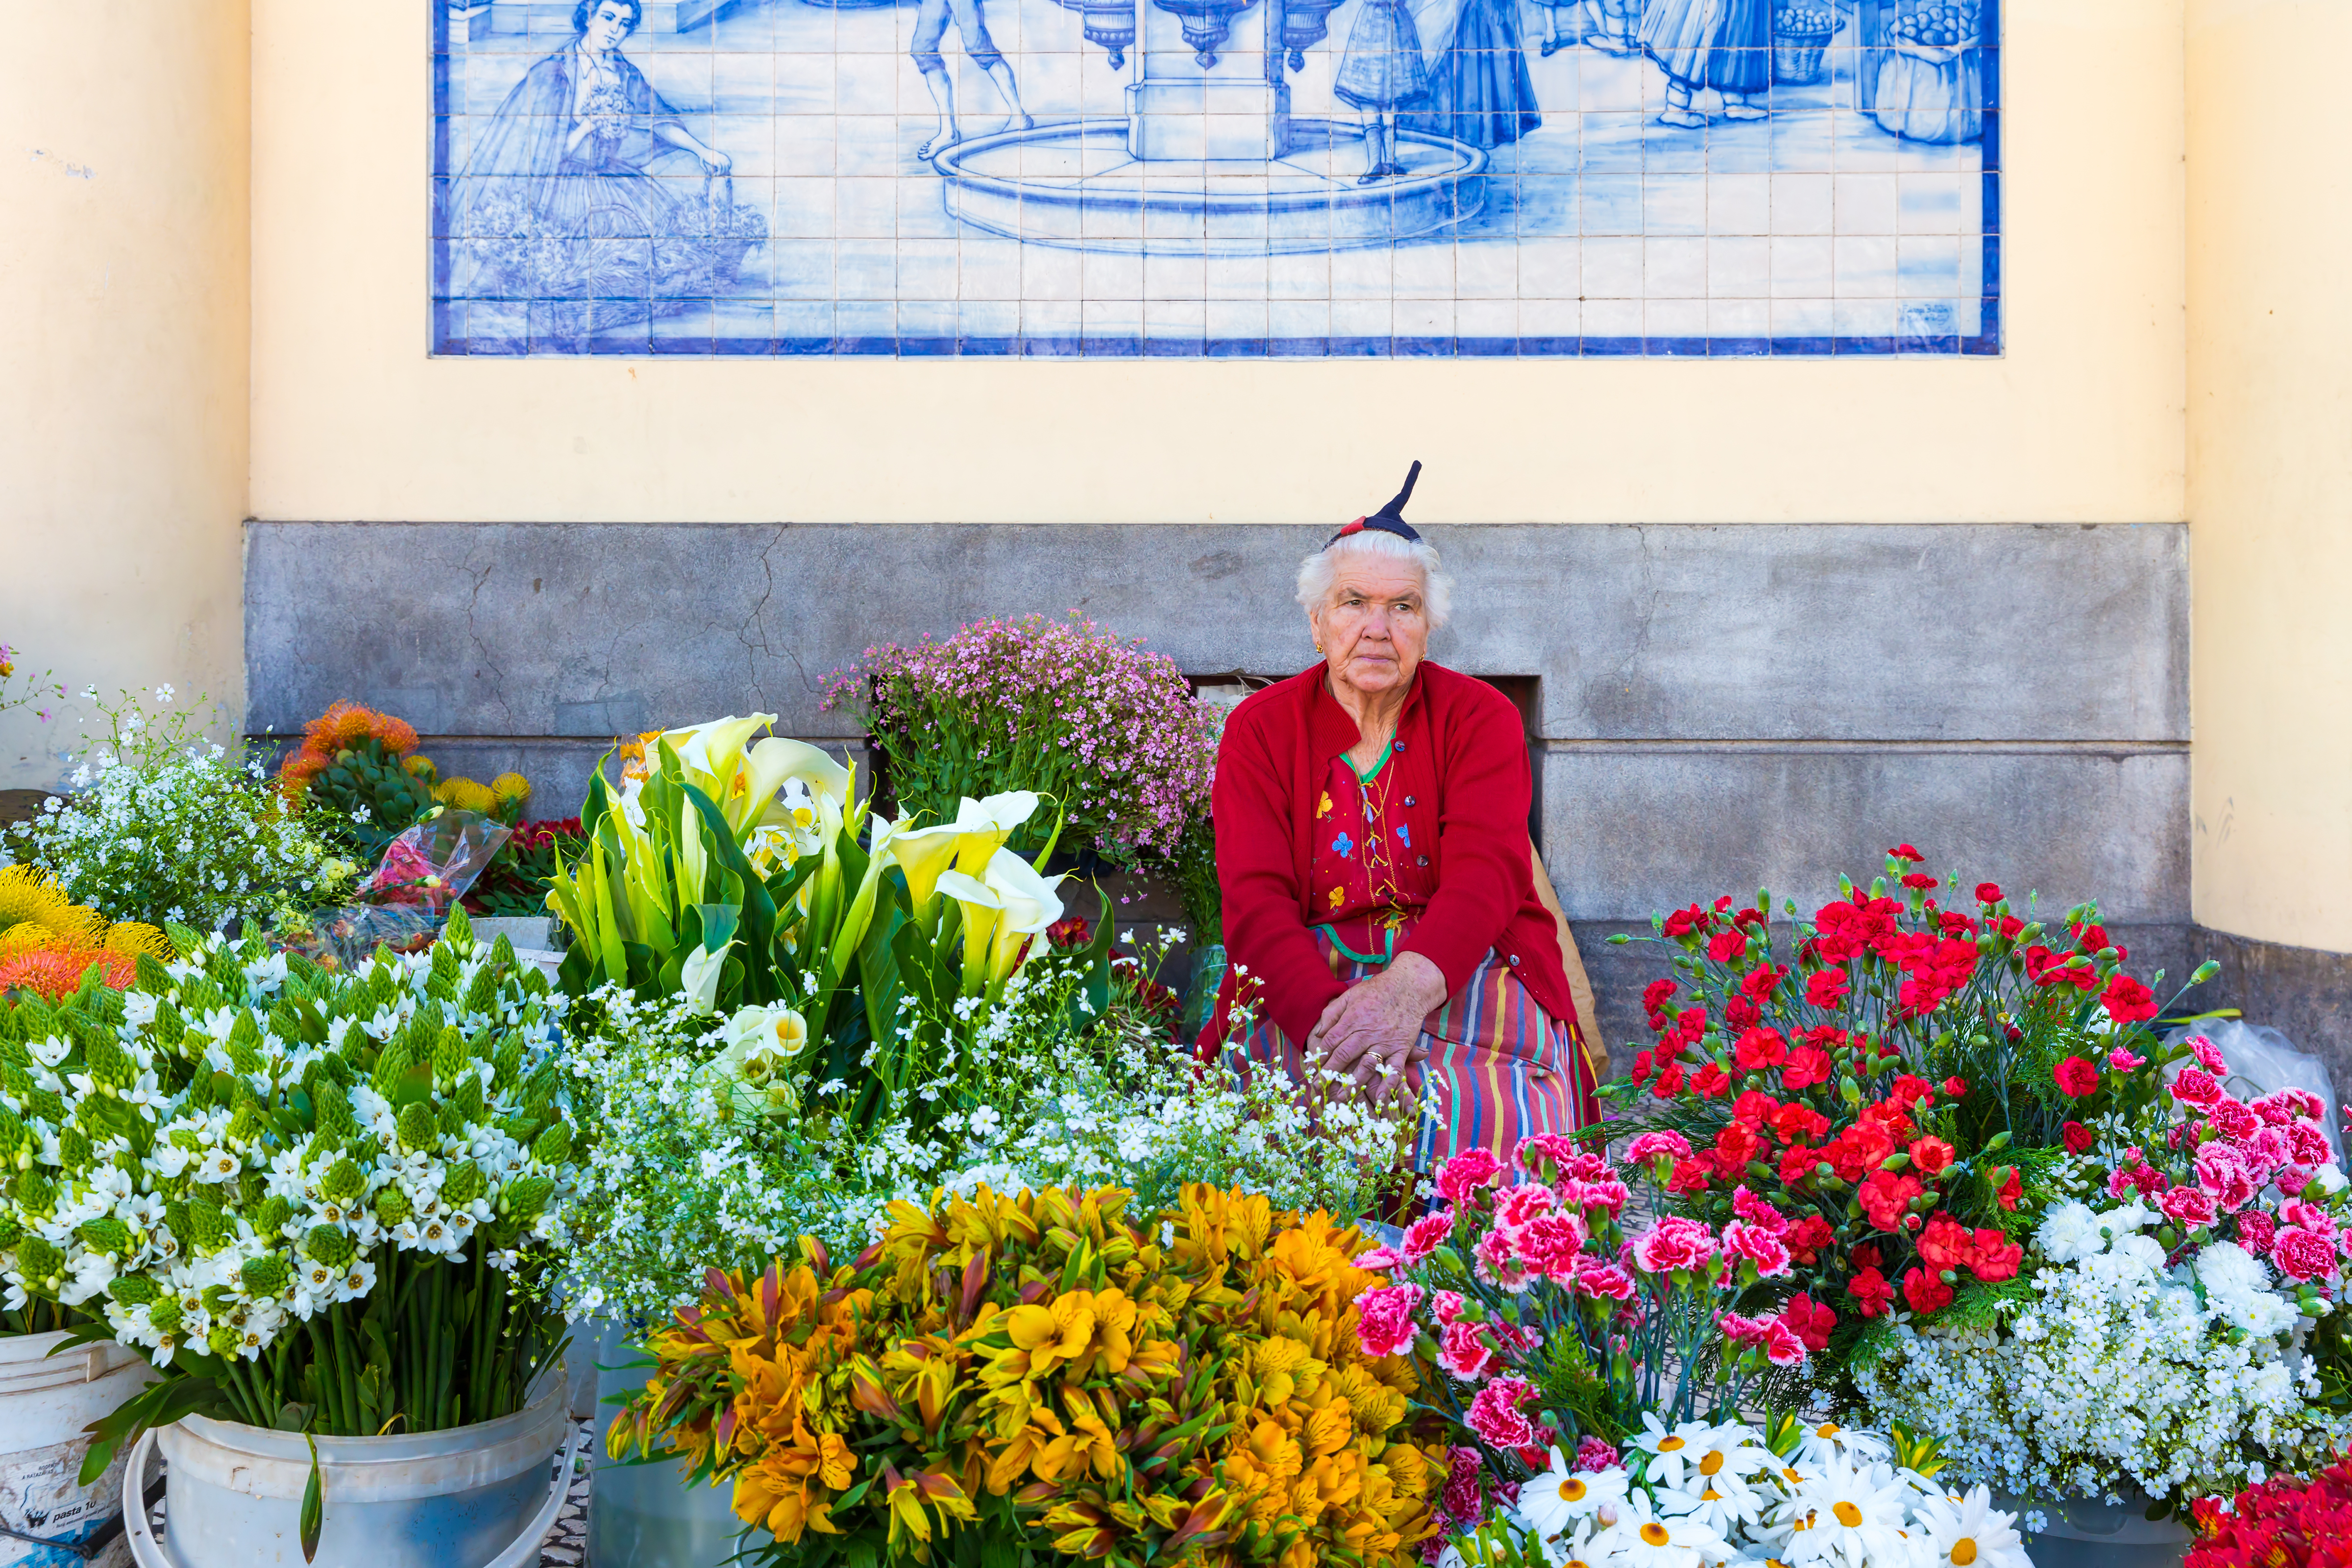 Tradicional mulher vende flores em um mercado de Funchal, Ilha da Madeira, Portugal